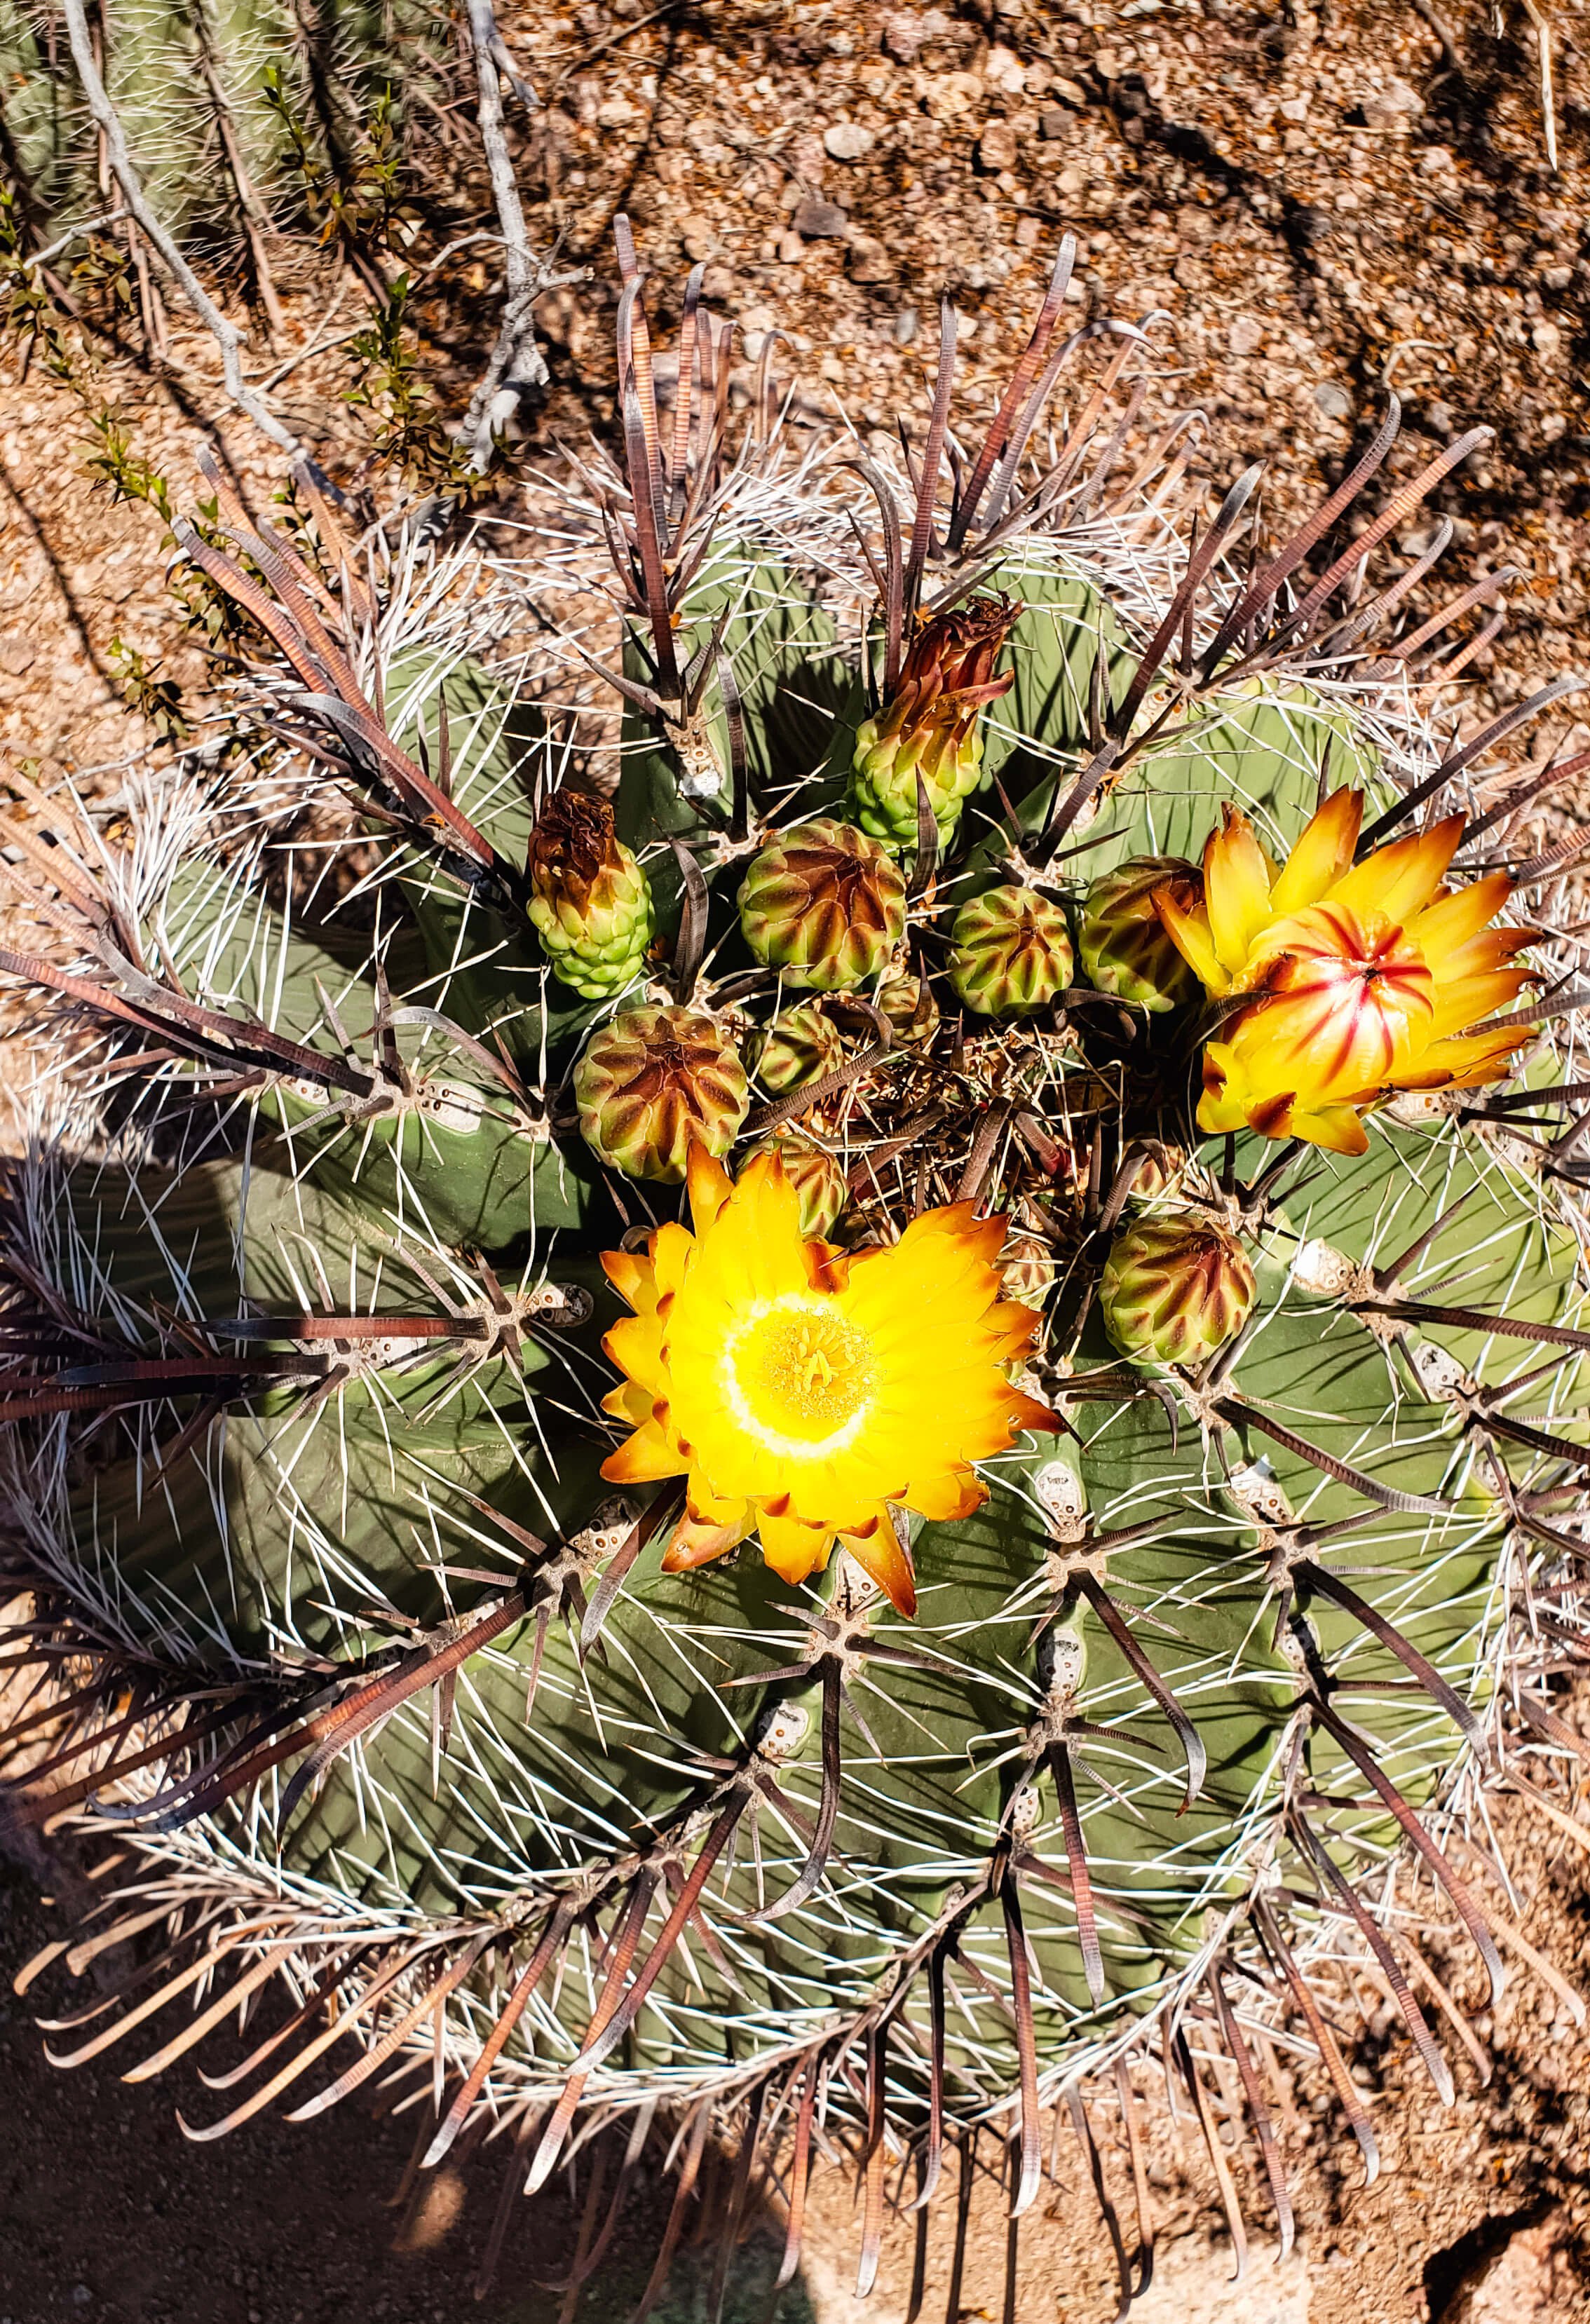 Flowering cactus at the Desert Botanical Gardens in Phoenix, Arizona - Traveling Tessie